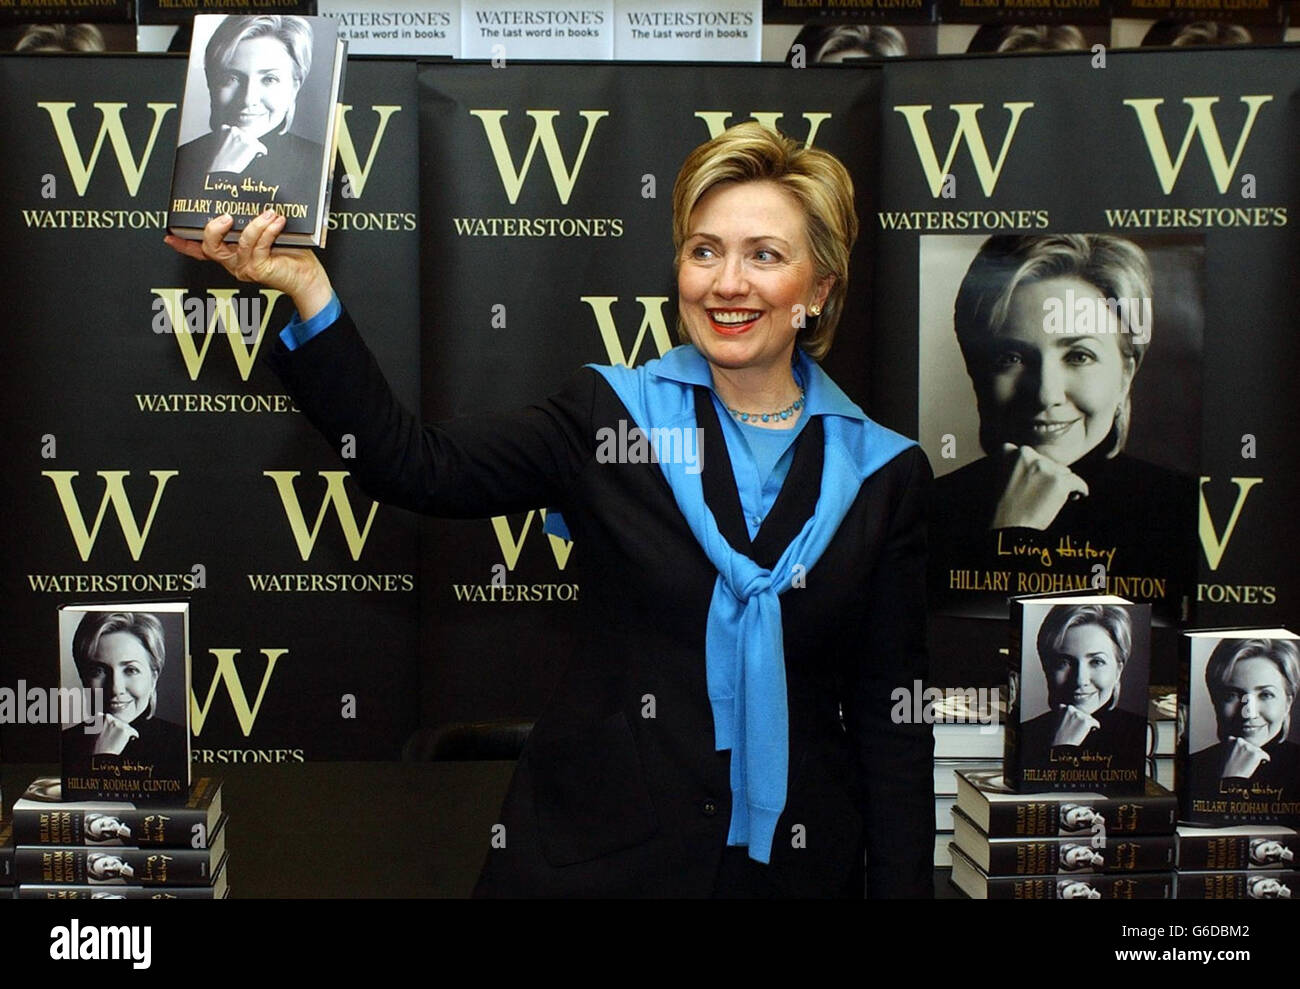 Die ehemalige US-First Lady Hillary Clinton hält während einer Autobiographie "Living History" im Waterstones-Buchladen in Londons Piccadilly ein Exemplar ihrer Autobiographie. Frau Clinton, die jetzt eine New Yorker Senatorin ist, soll einen Vorschuss von 5 Millionen für das Buch erhalten haben. * die Autobiographie soll Mrs. Clintons letztes Wort über die Whitewater-Affäre und Monica Lewinsky, die Praktikantin des Weißen Hauses, mit der ihr Mann Bill eine Affäre hatte, sein. Stockfoto